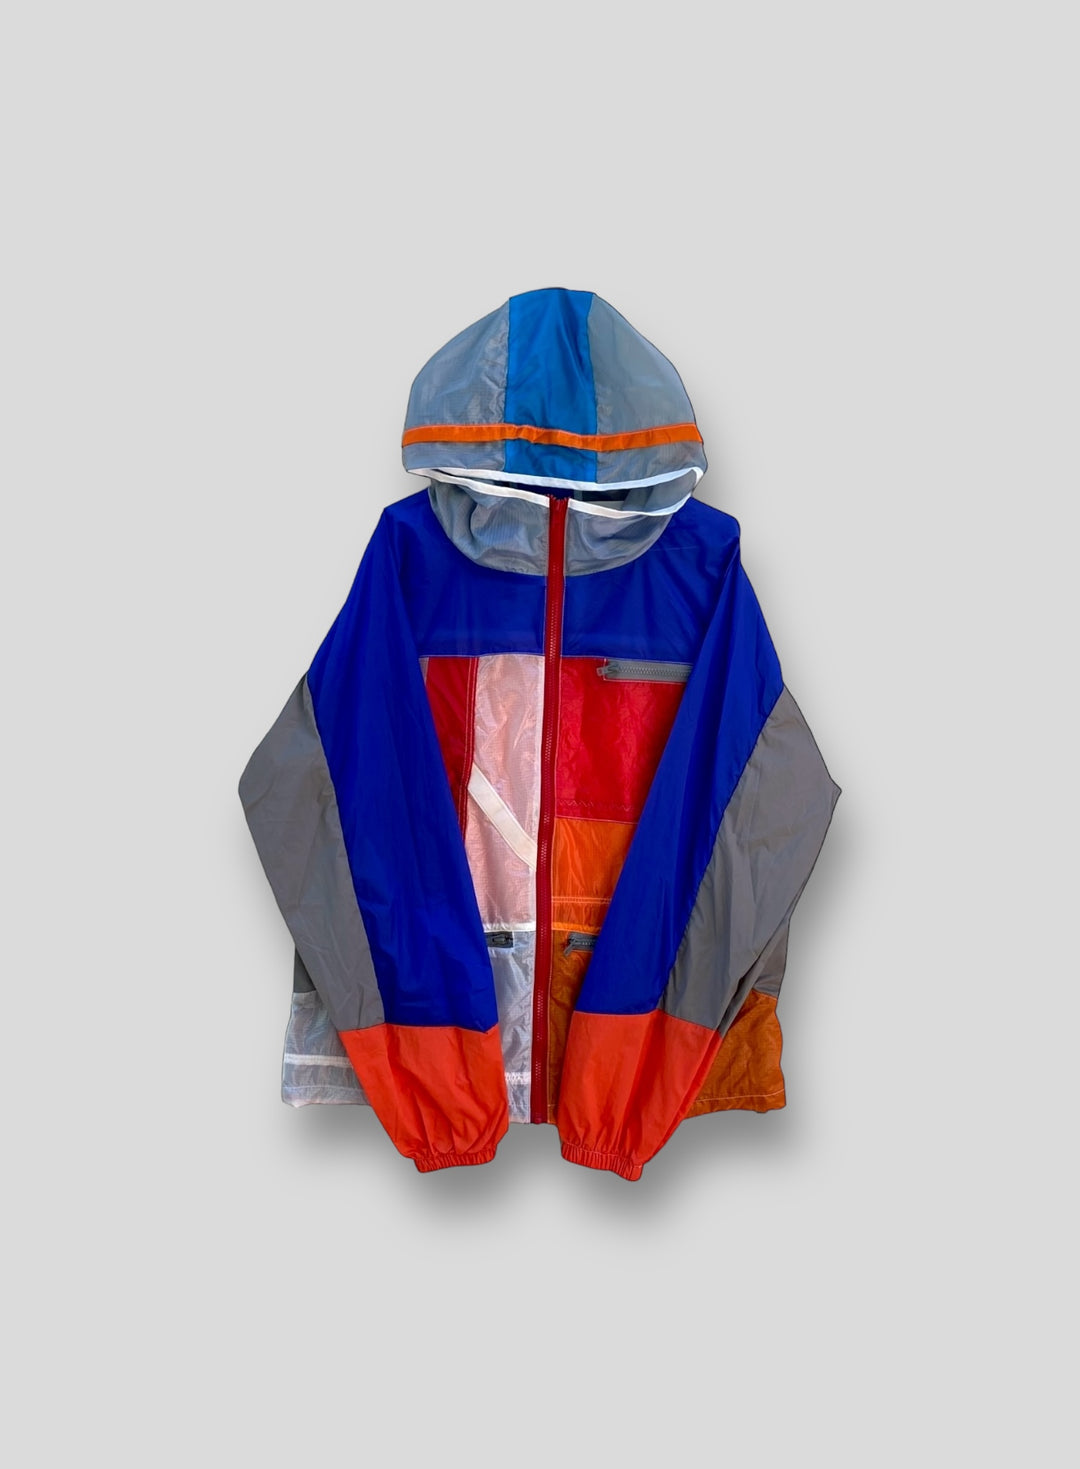 Upcycled Parachute Jacket (Large - C.55.23)